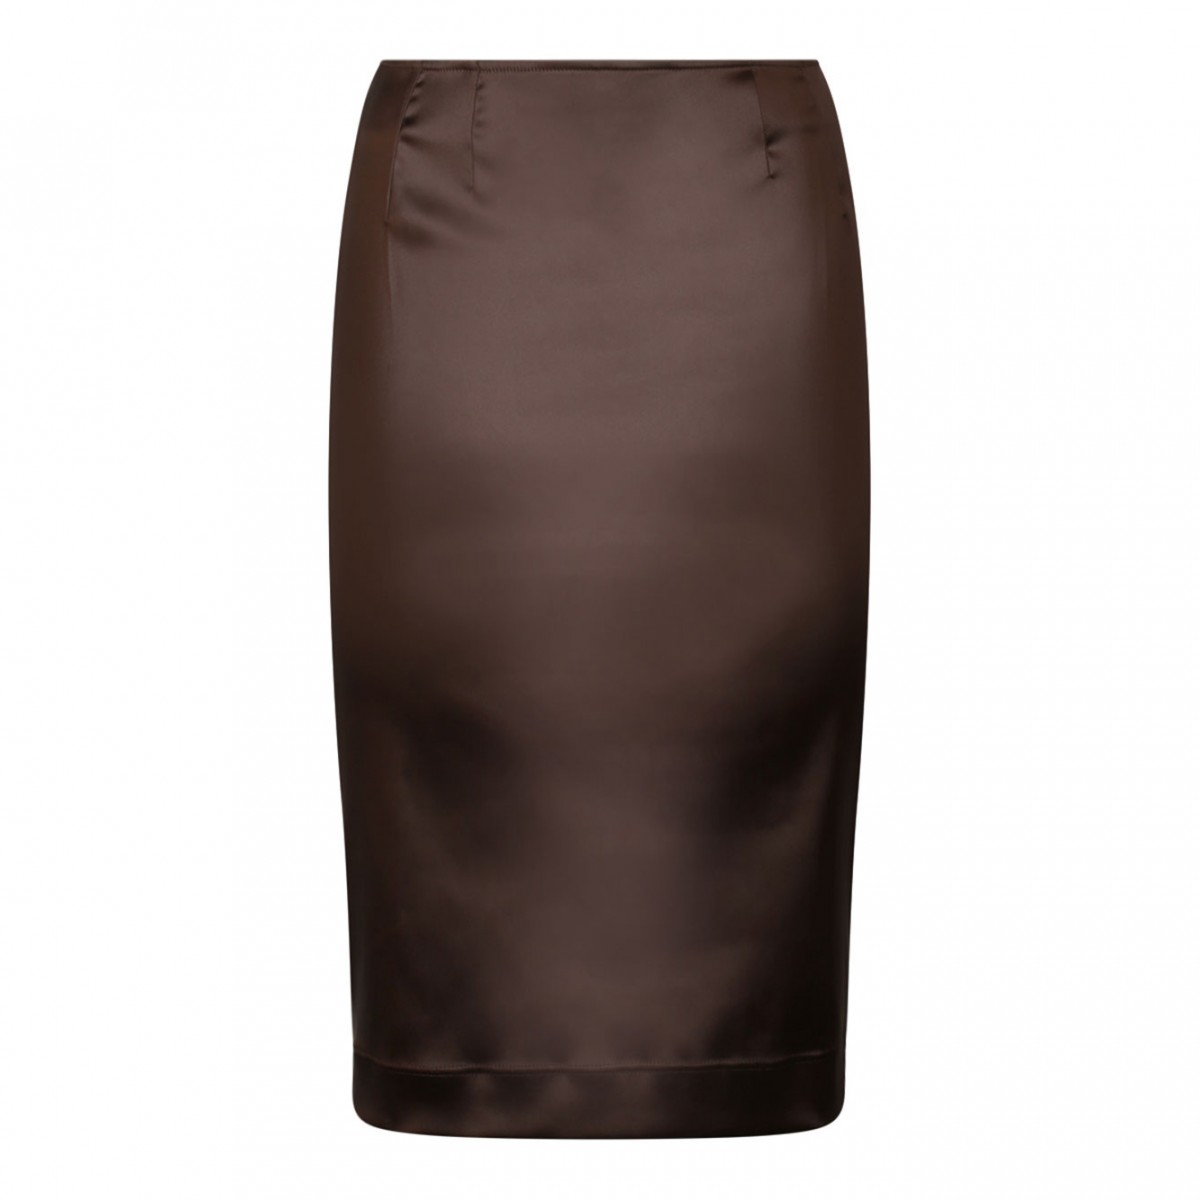 Chesnutt Brown Pencil Skirt